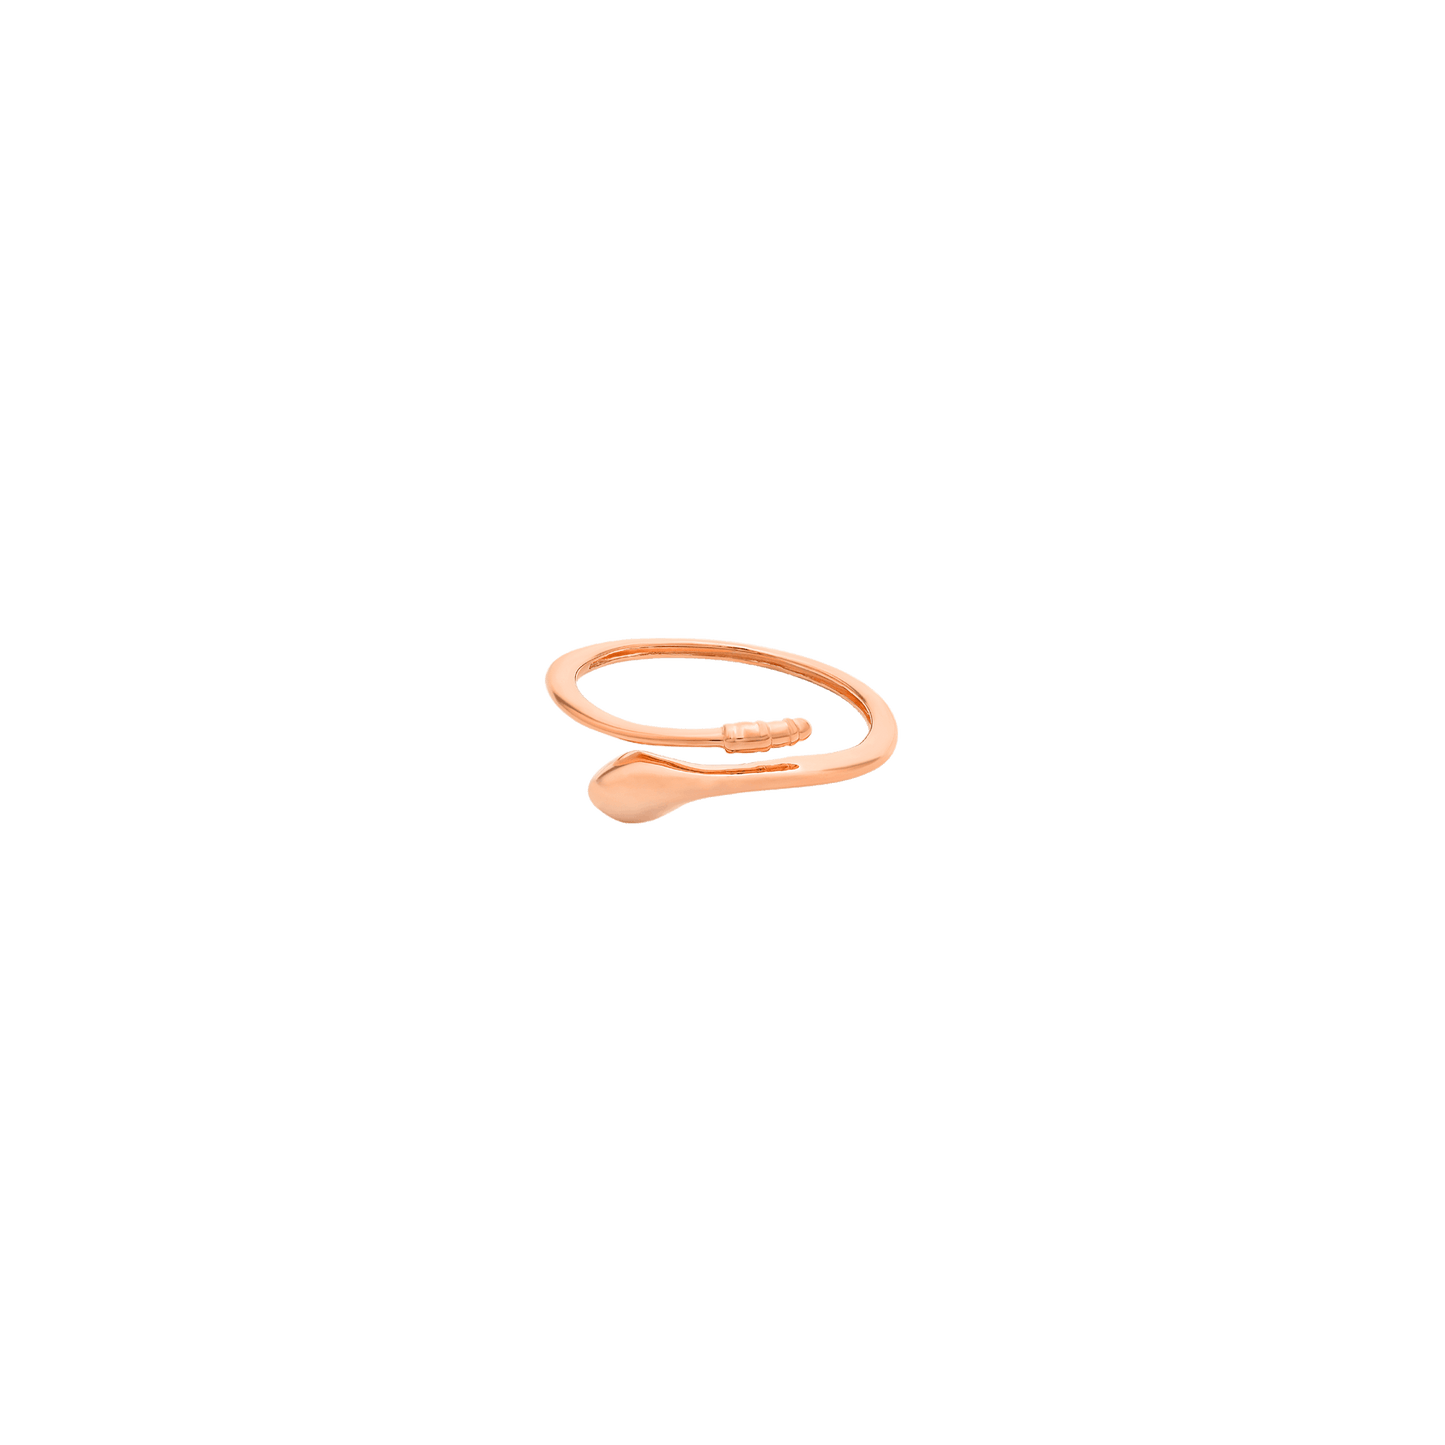 Snake Ring - 14K White Gold Rings 14K Solid Gold 